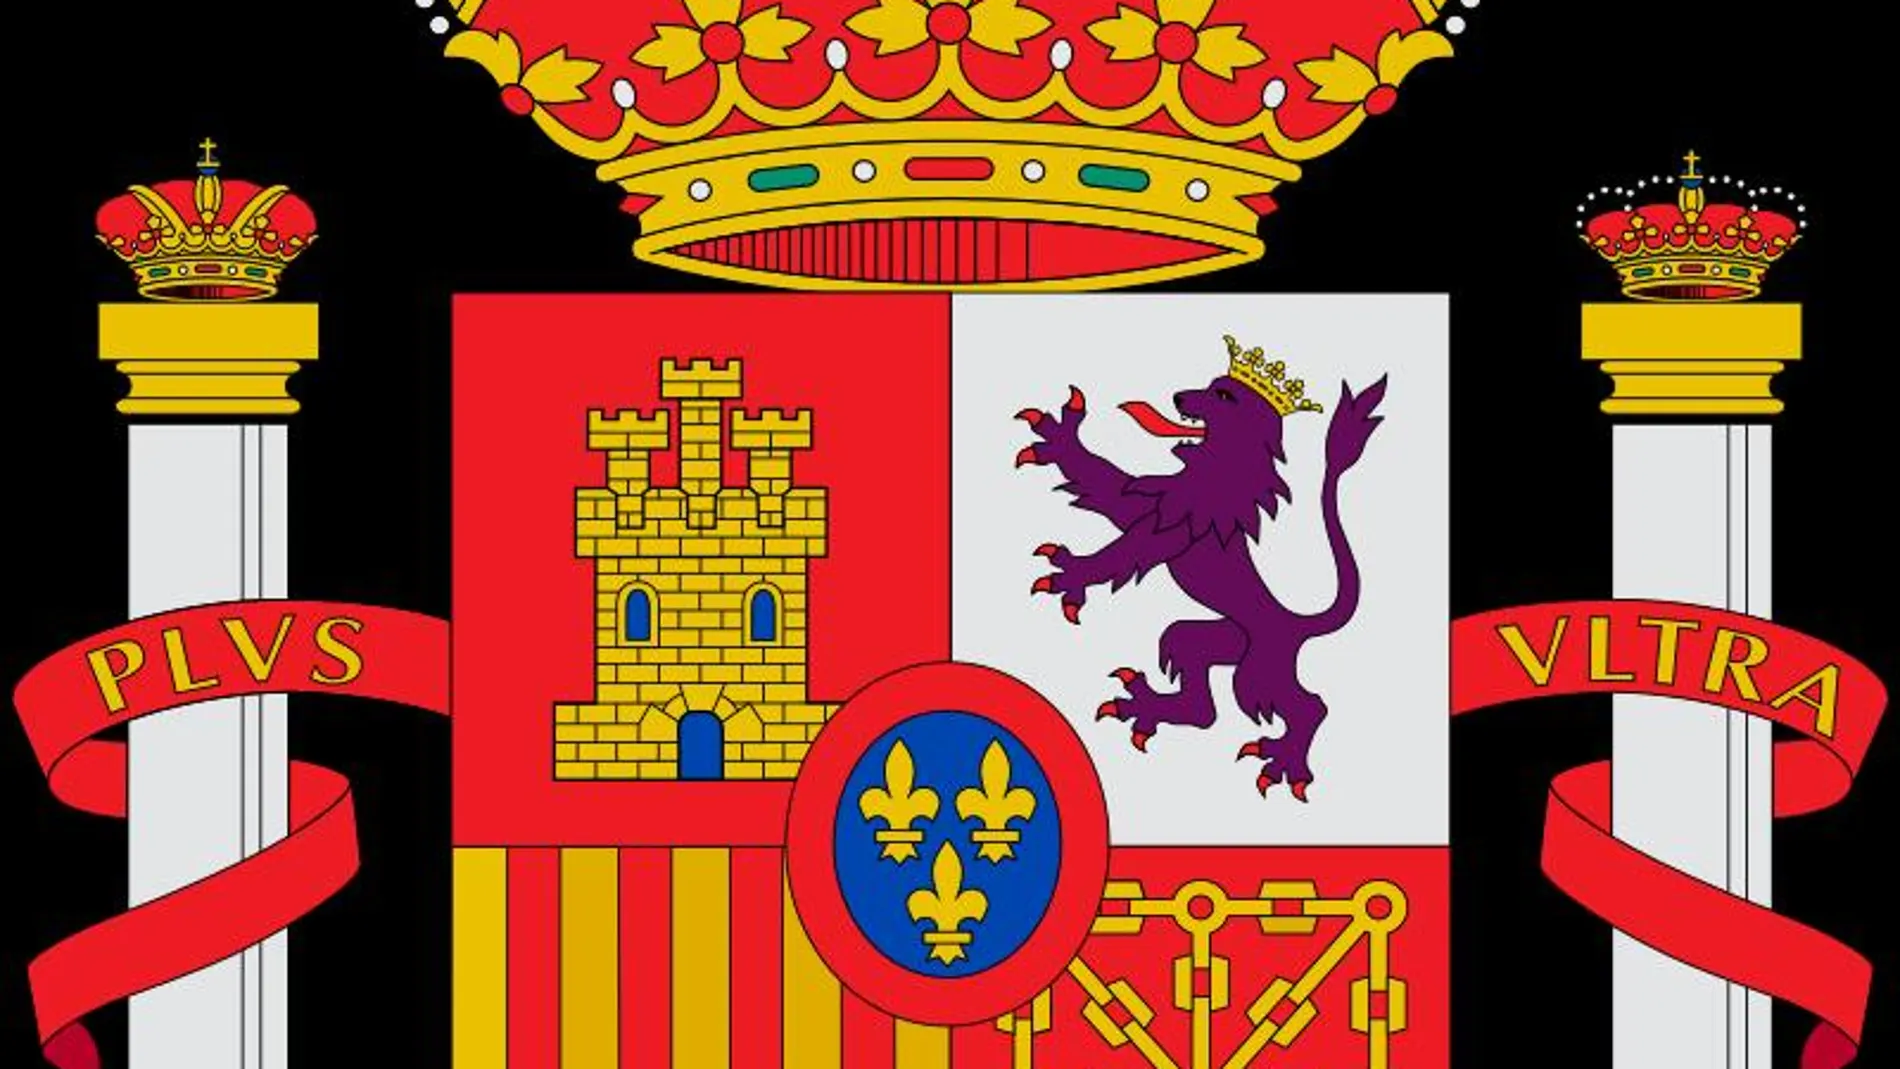 Cuál es el significado del escudo de España?